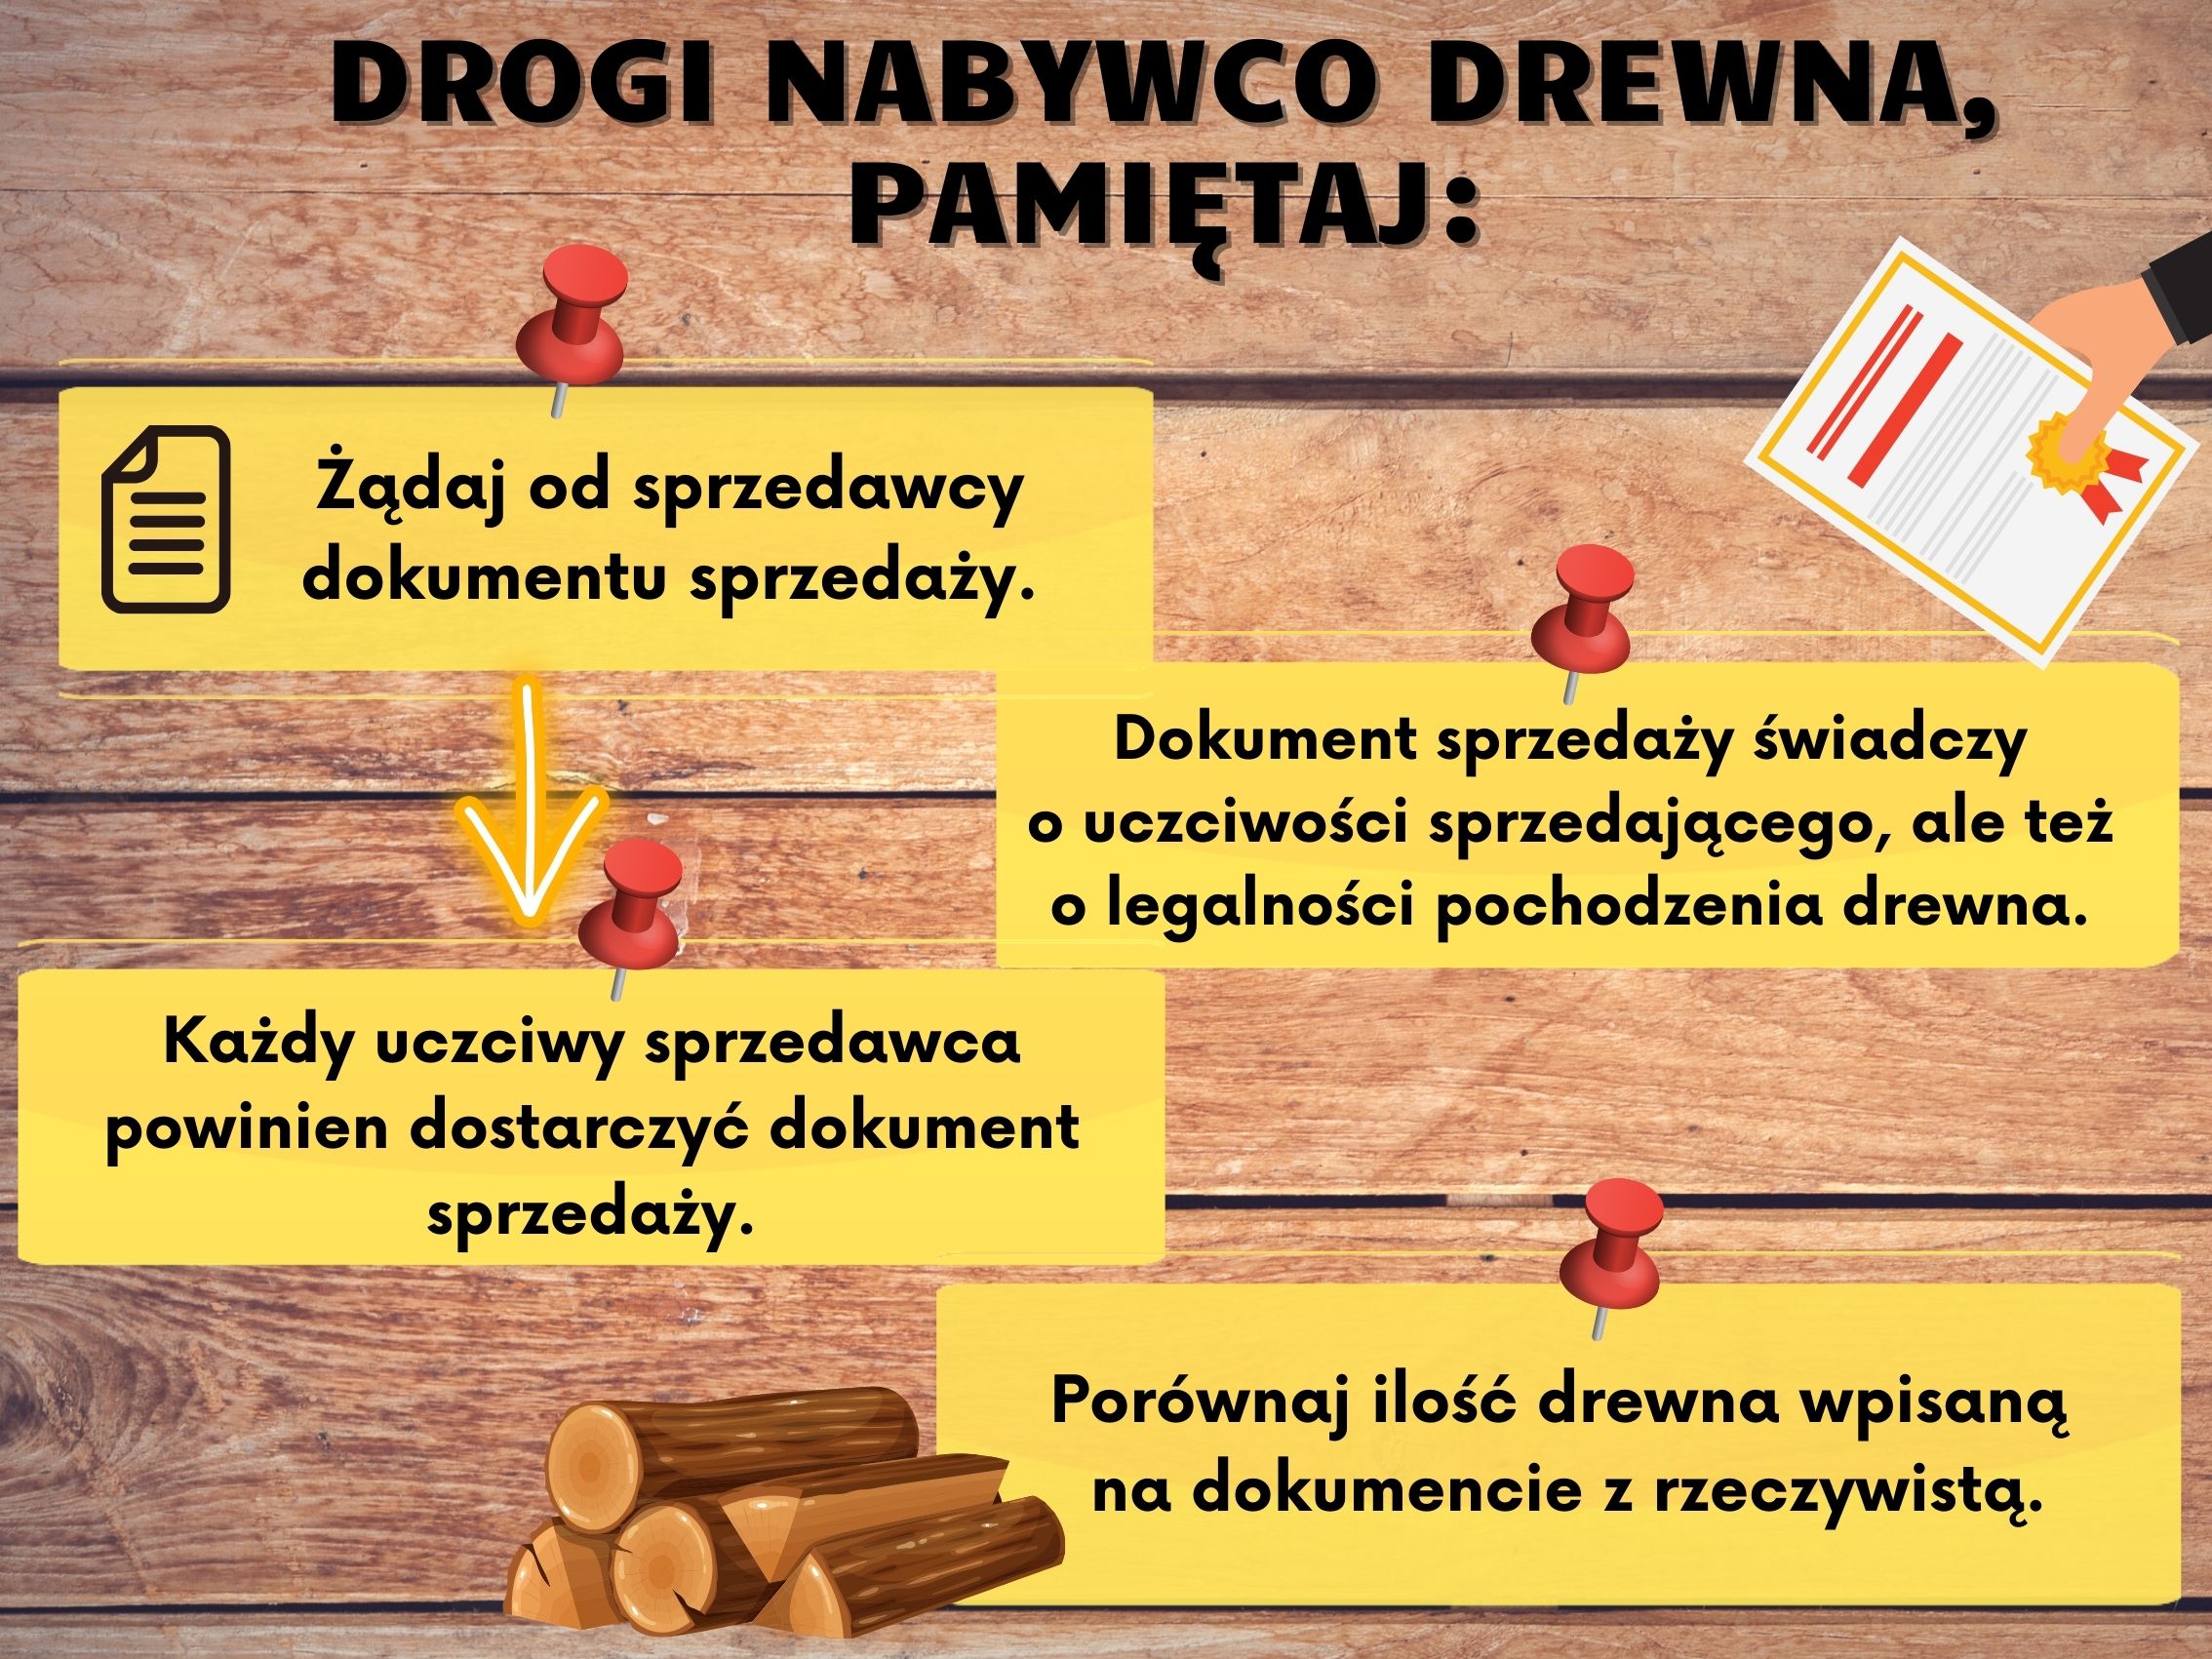 Grafika przedstawia kilka zasad, o których należy pamiętać podczas zakupu drewna. Źródło: Canva.